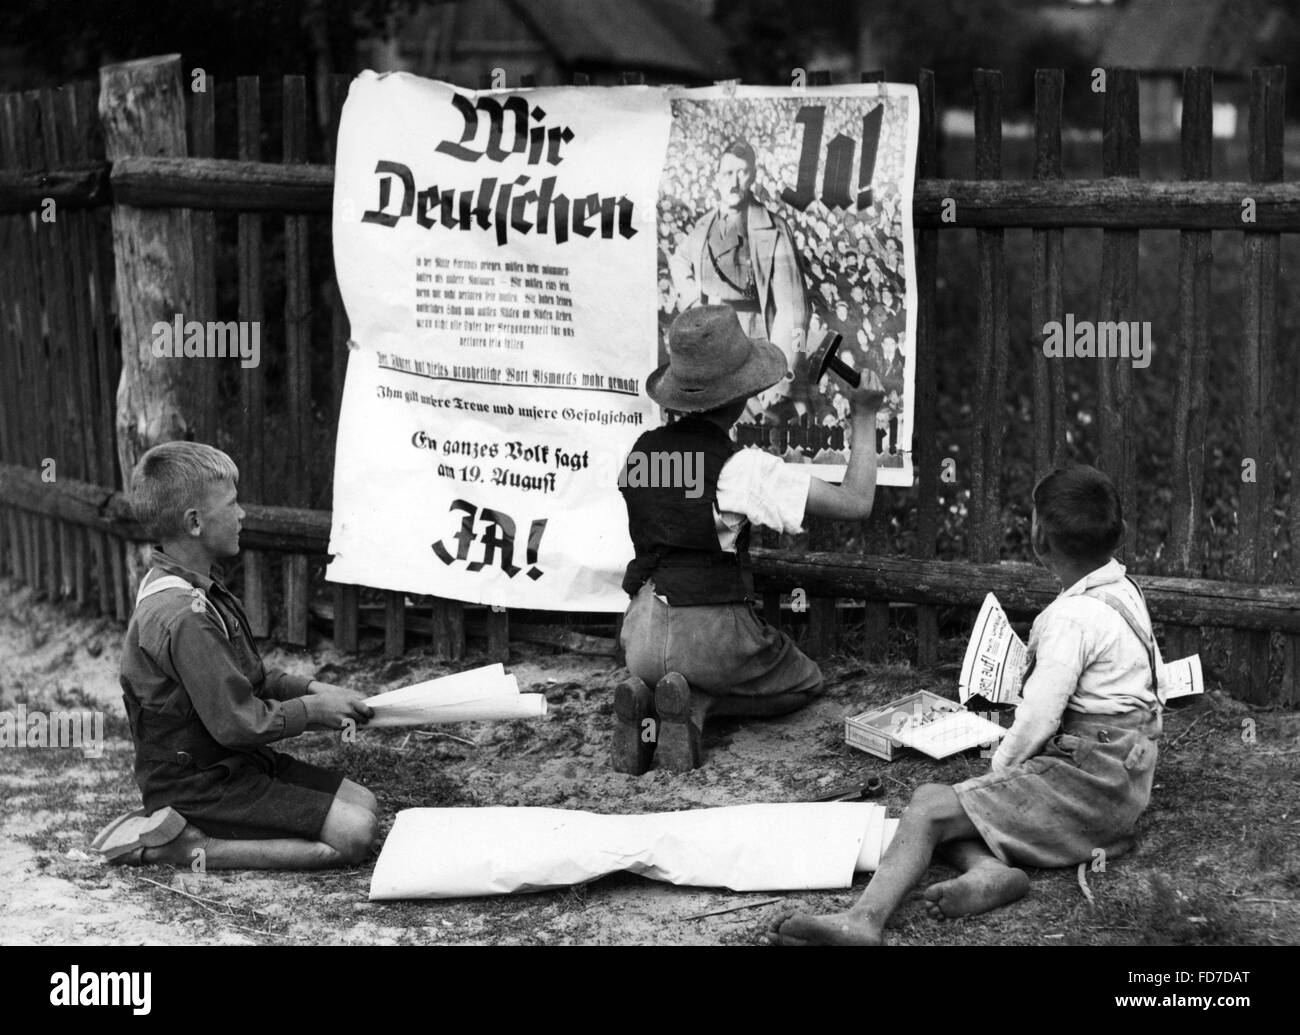 Montage des enfants affiches dans Spreewald pourla référendum sur le chef de l'état de l'Empire allemand, 1934 Banque D'Images